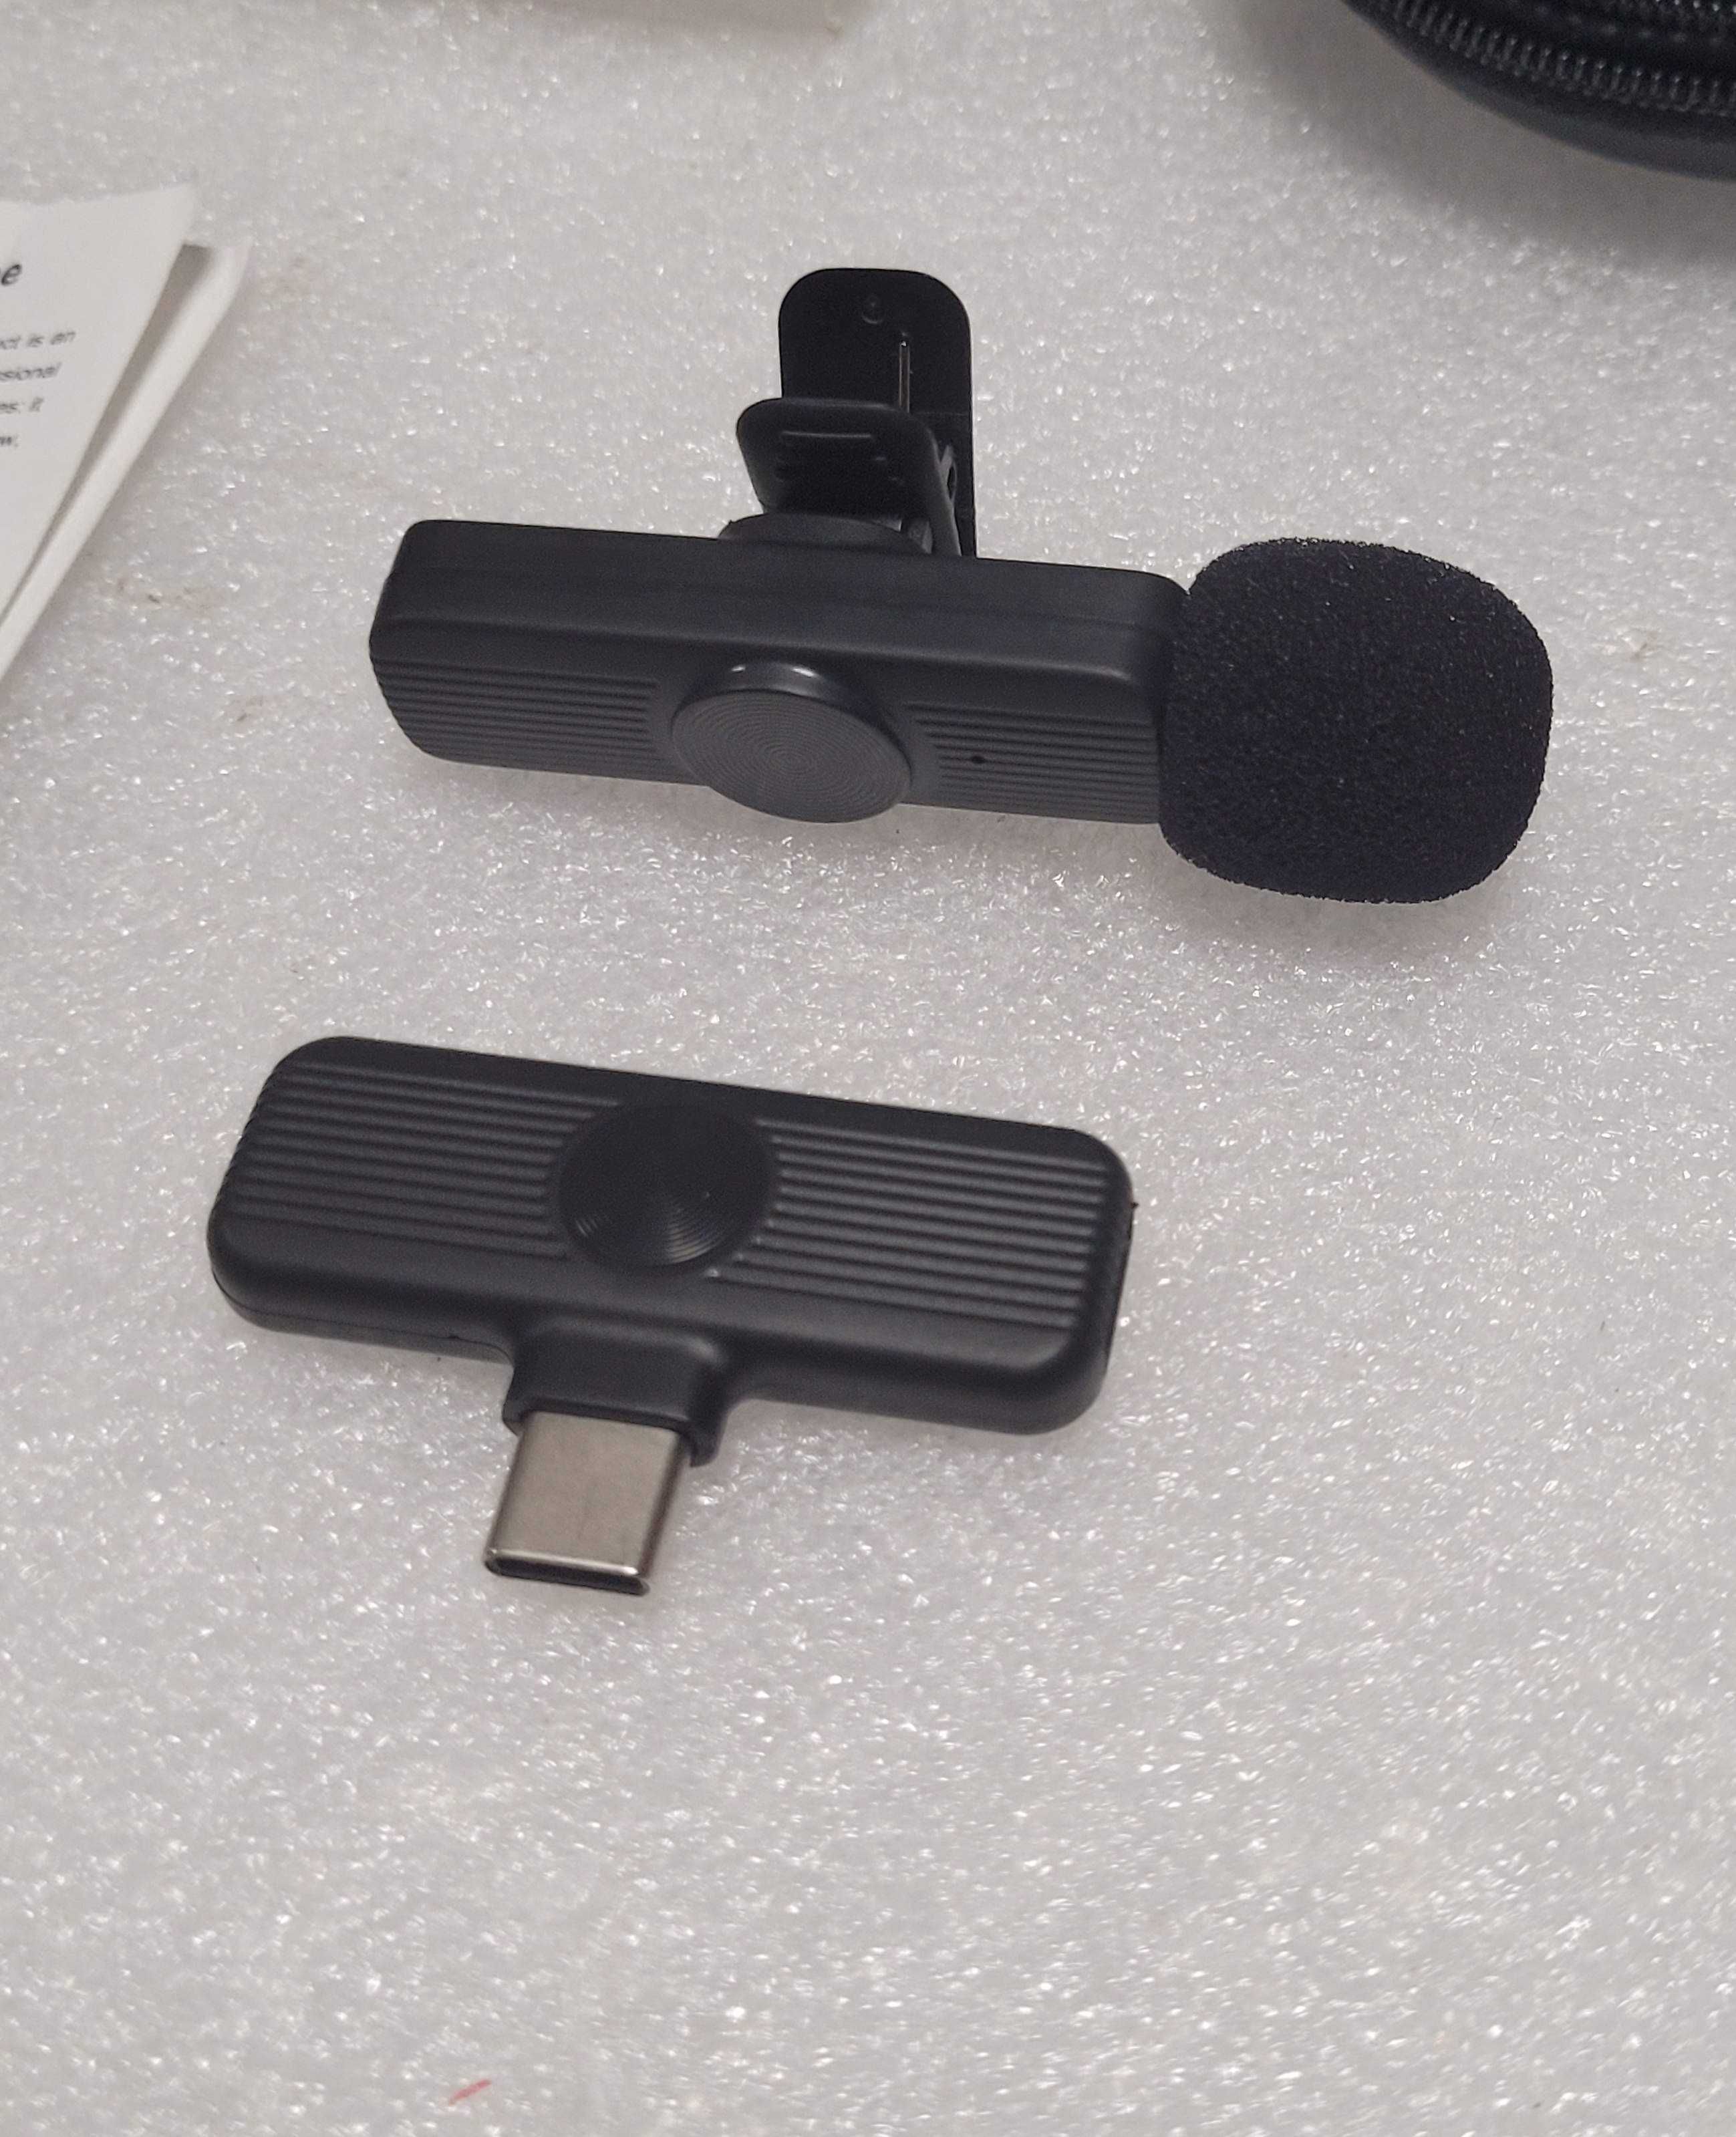 Bezprzewodowy Mikrofon Lavalier USB-C do Telefonu Laptopa komplet